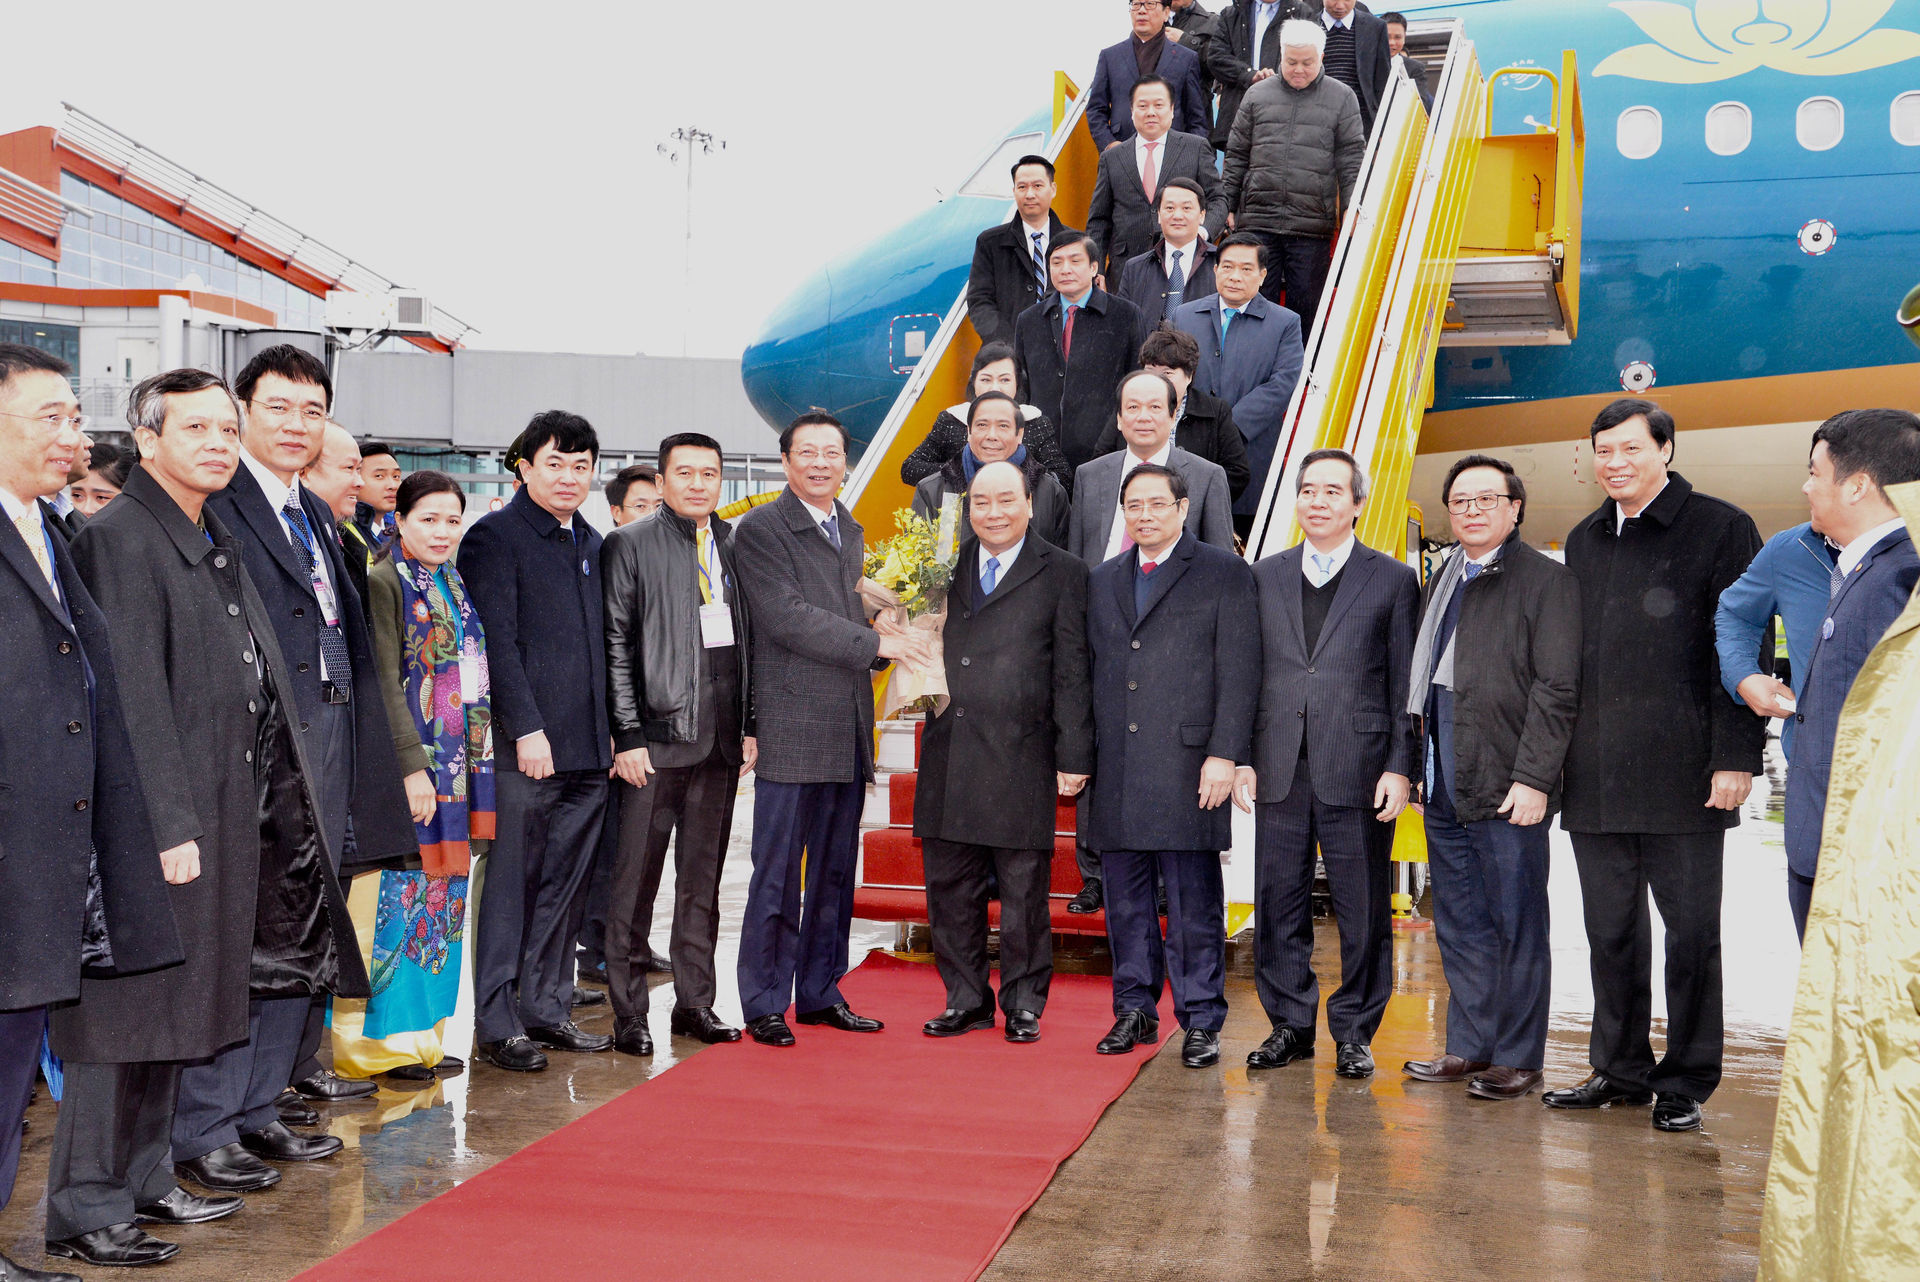 Chào đón Thủ tướng Chính phủ Nguyễn Xuân Phúc đi trên chuyến bay VN9716 của Vietnam Airlines từ Hà Nội hạ cánh tại sân bay Vân Đồn lúc 8h50 ngày 30/12/2018.